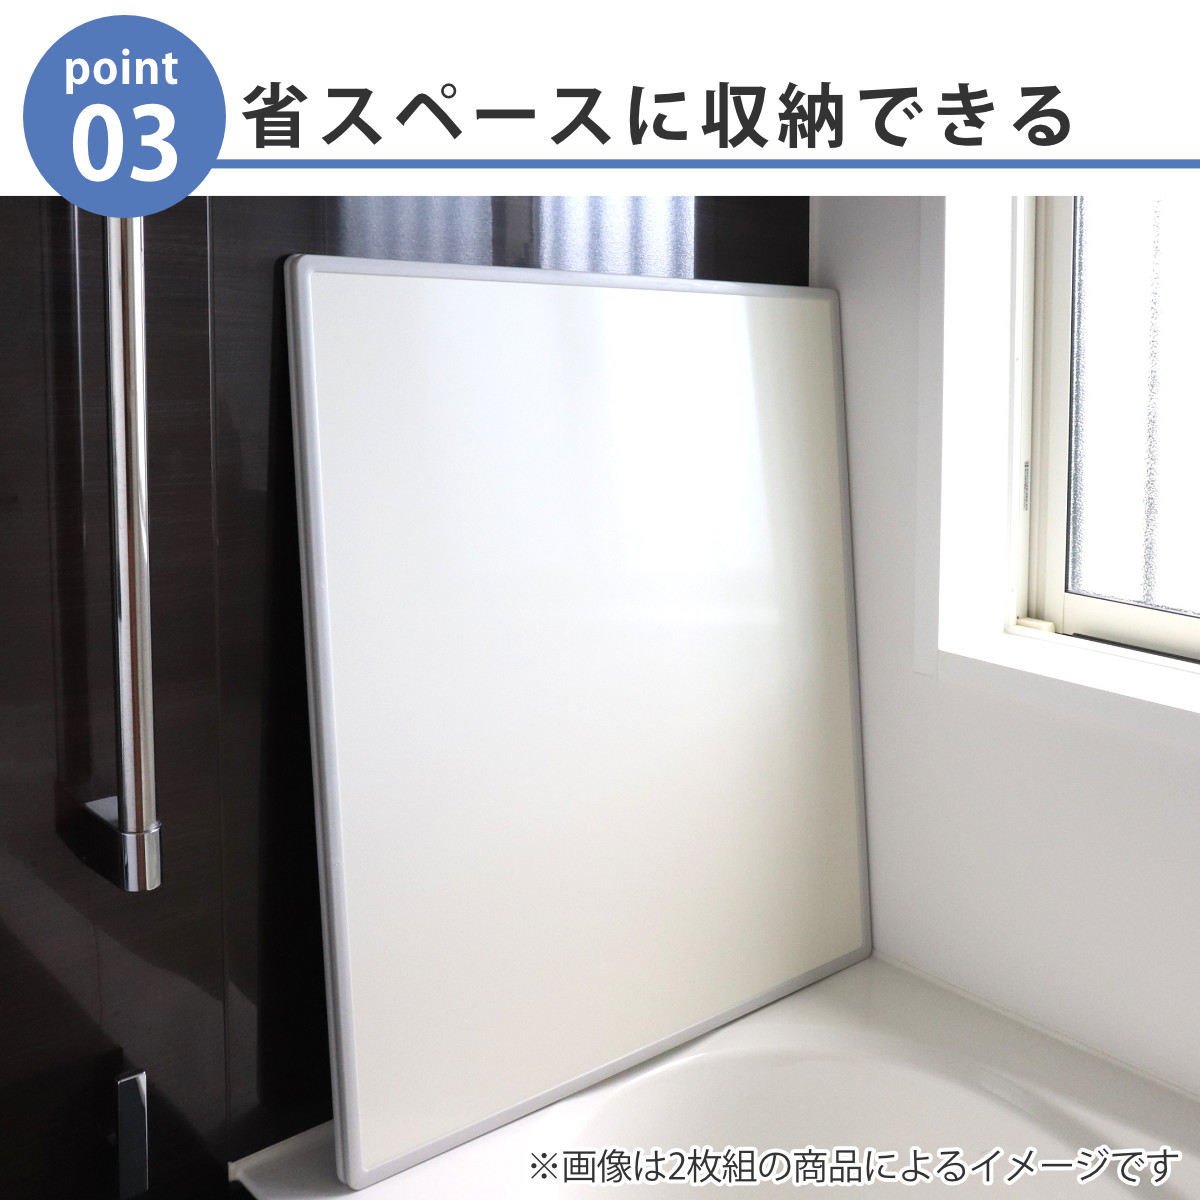 特典付き 抗菌 風呂ふた 組み合わせ 70×120cm 用 M12 3枚組 日本製